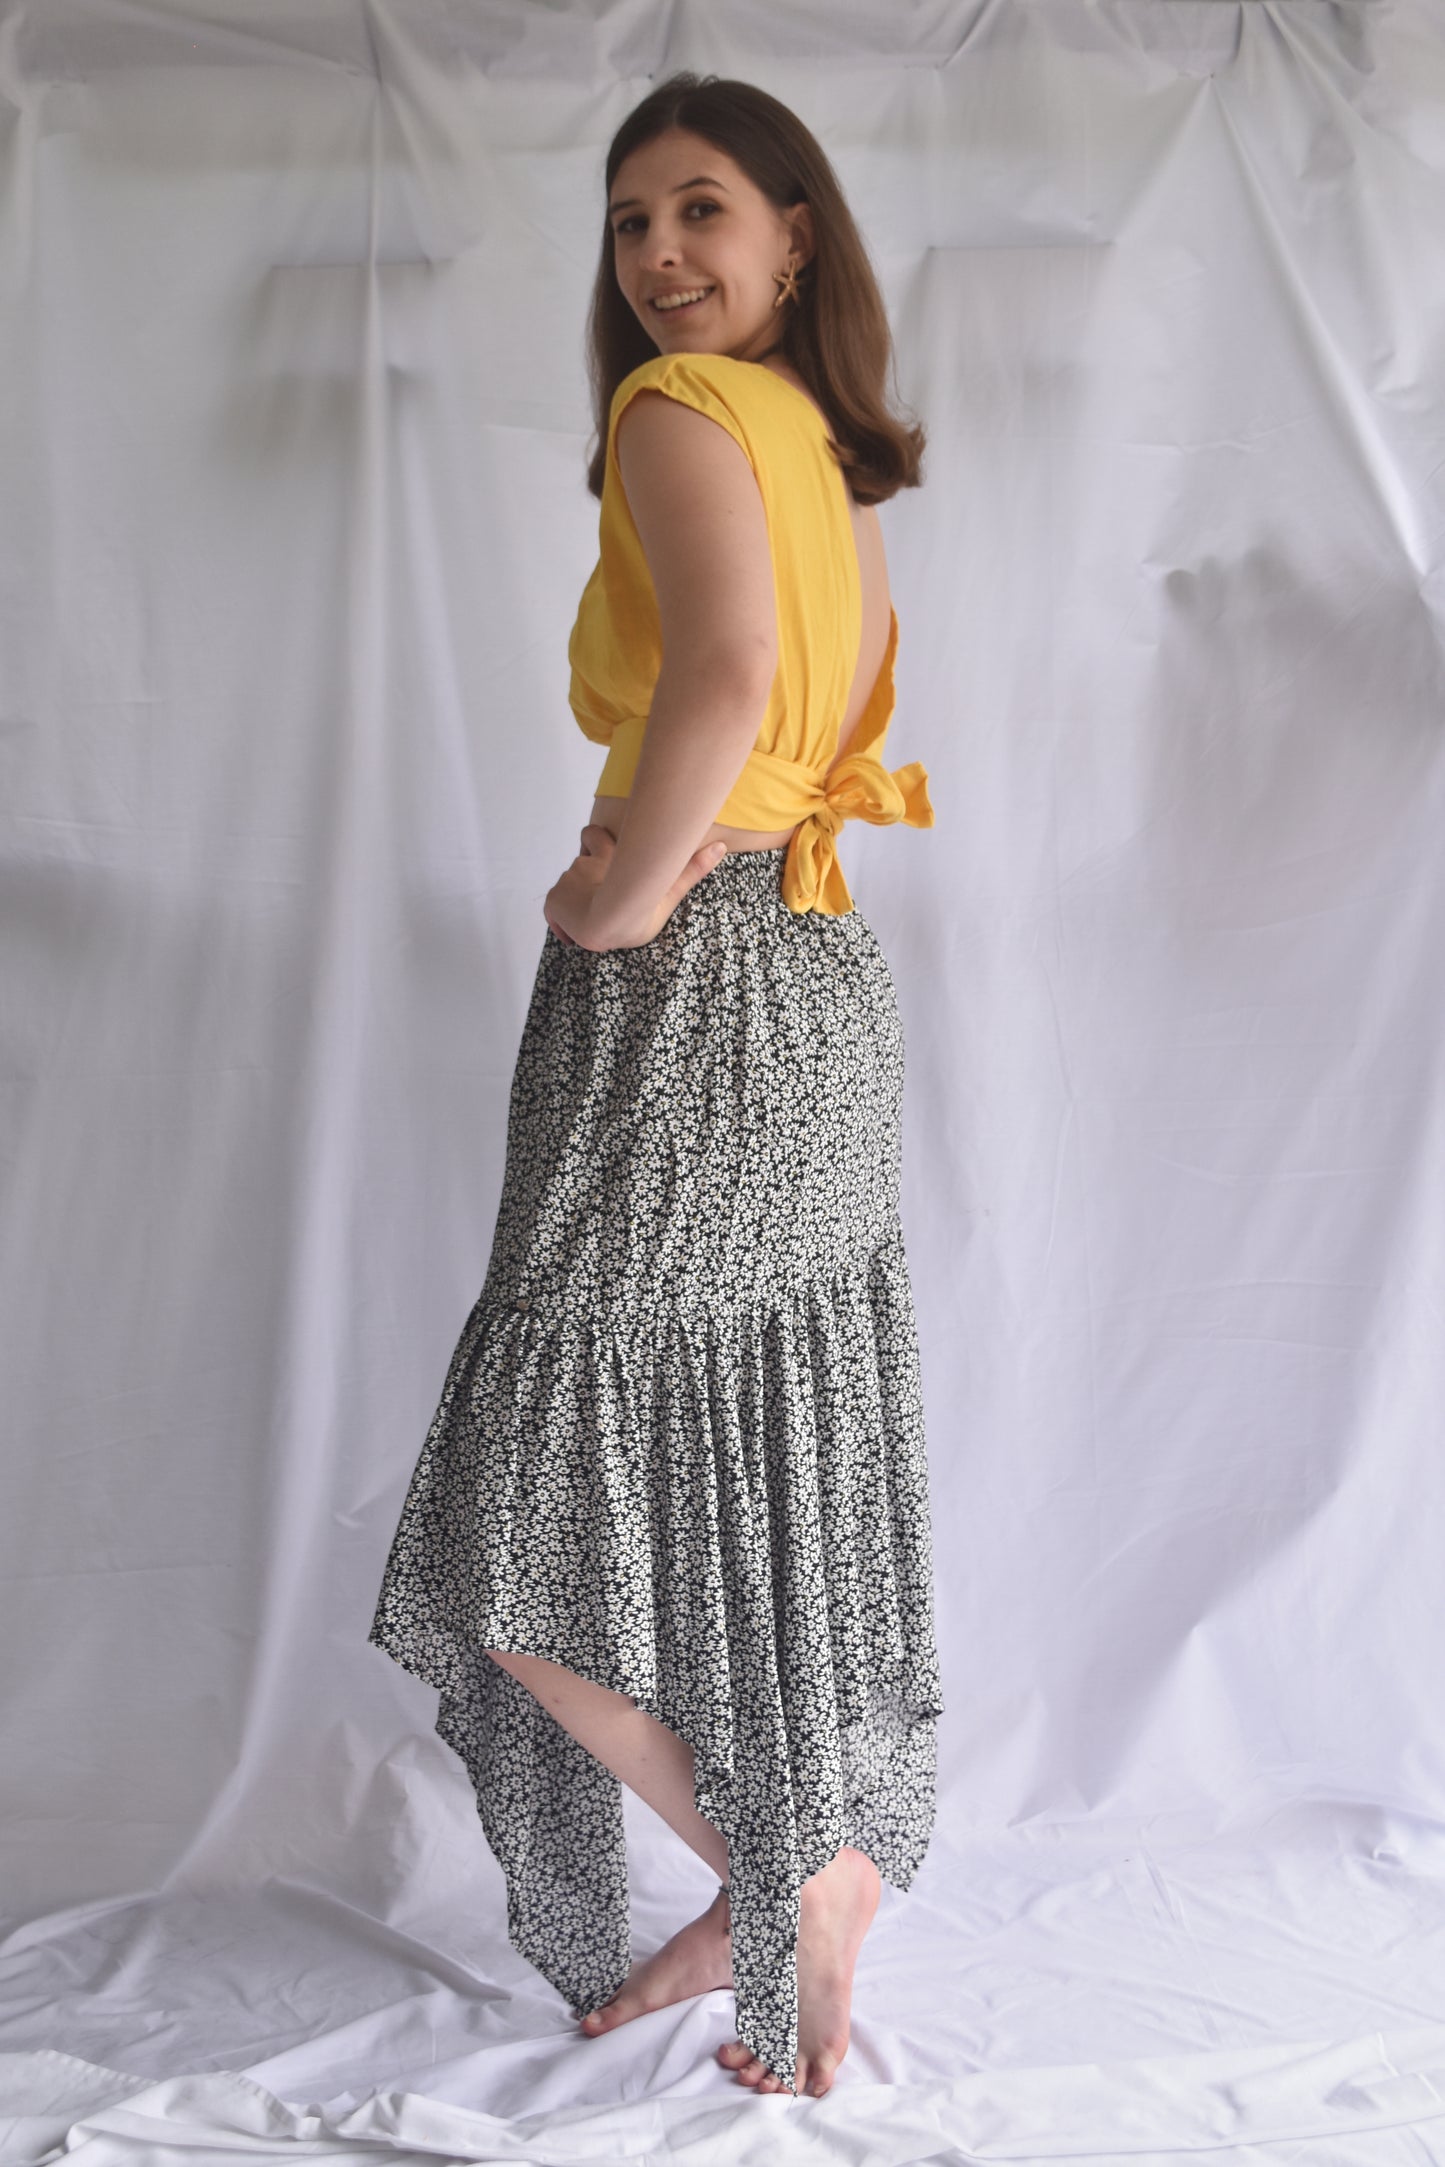  Falda midi estampada con mini print de flores, en chalis, con resorte en la cintura y bolero en punta hasta los tobillos